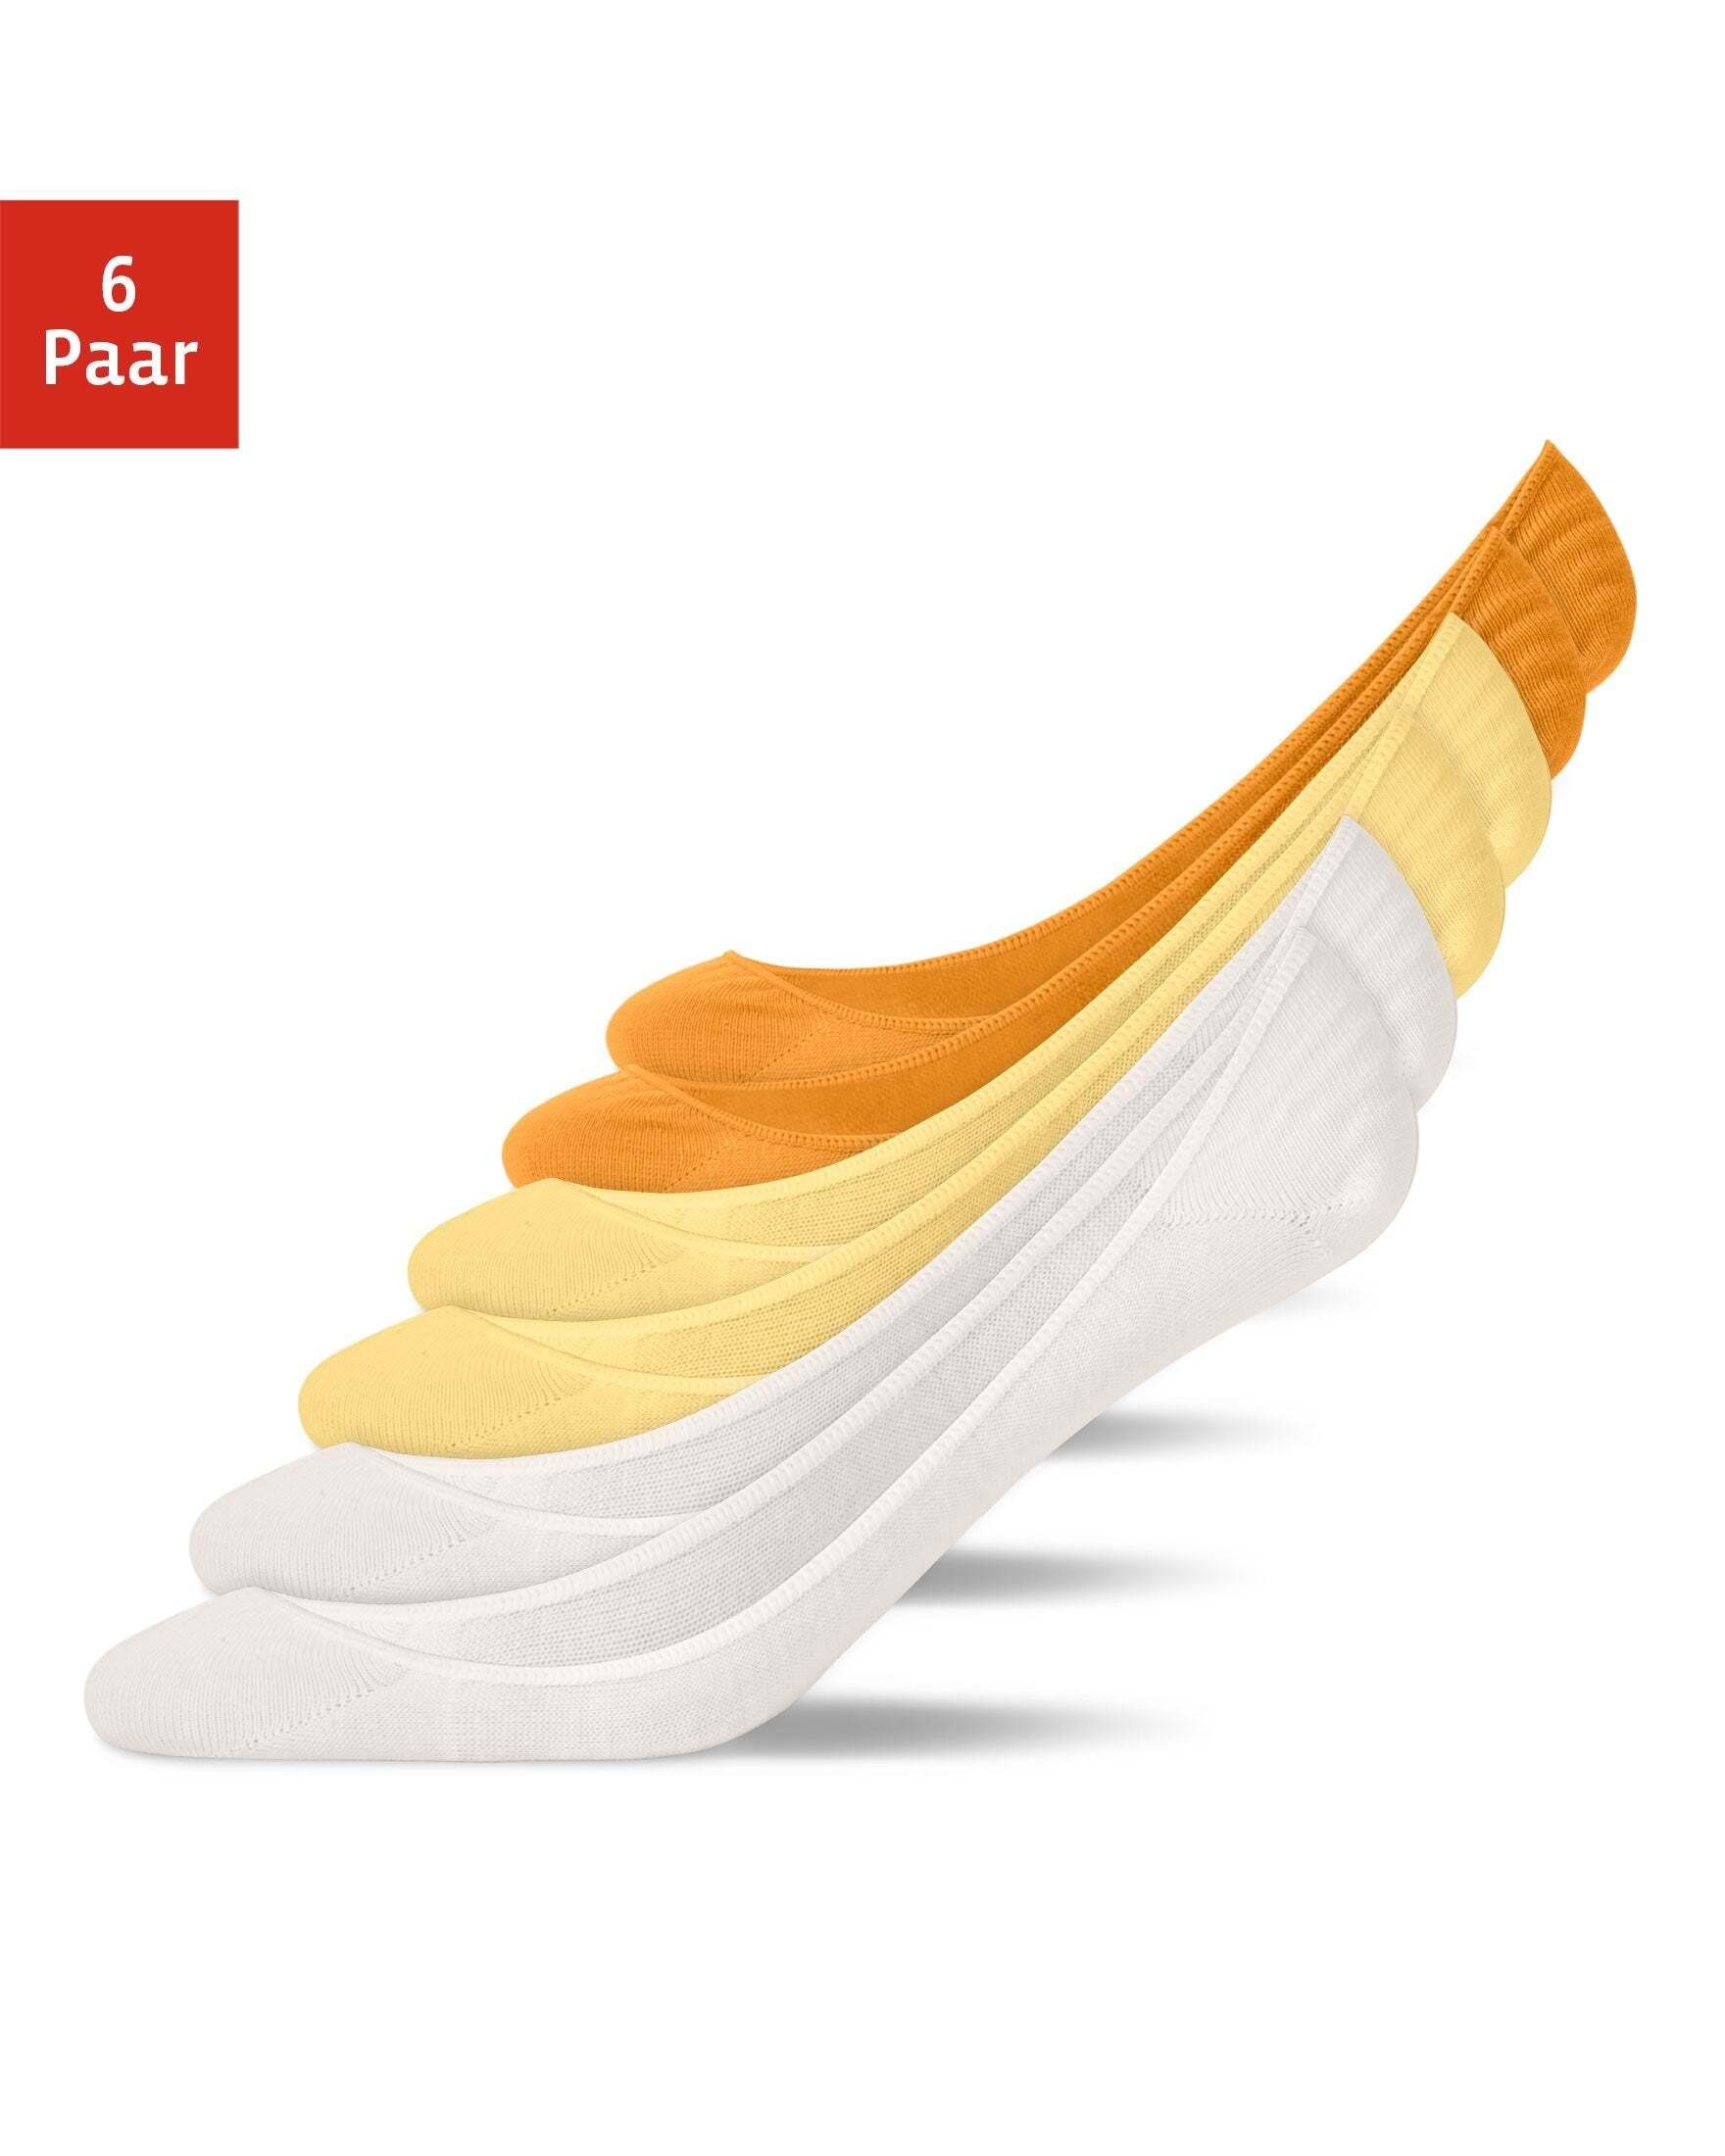 SNOCKS Füßlinge Low Cut Füßlinge Ballerina Socken (6-Paar) aus Bio-Baumwolle, perfekt für Ballerinas Mix (Orange/Gelb/Creme)